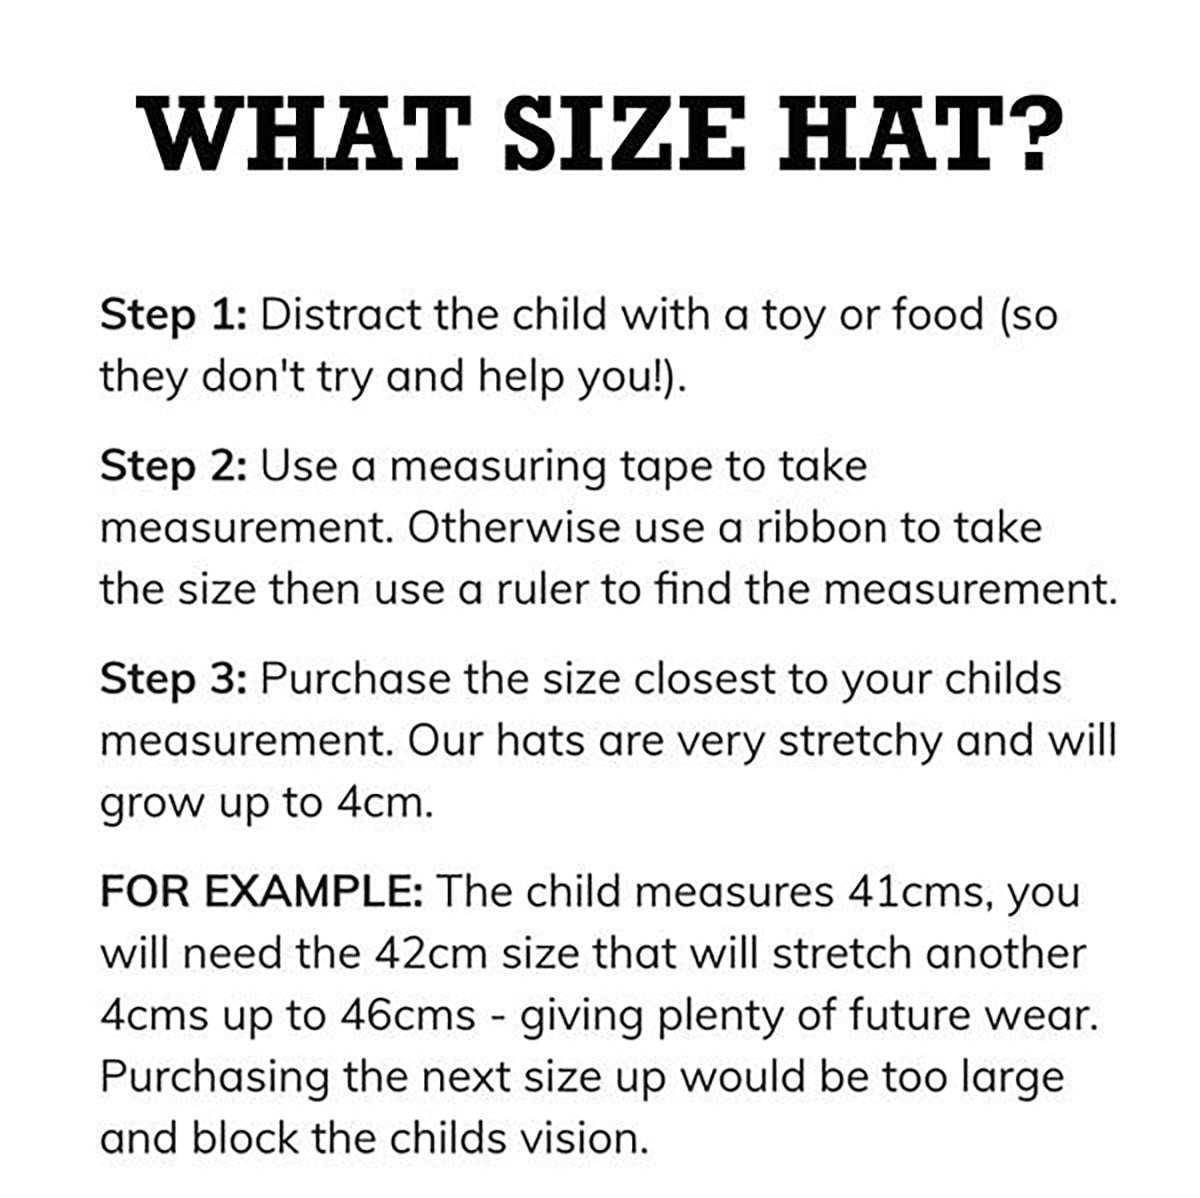 Bedhead Toddler Bucket Hat Rainbow | Bedhead Hats